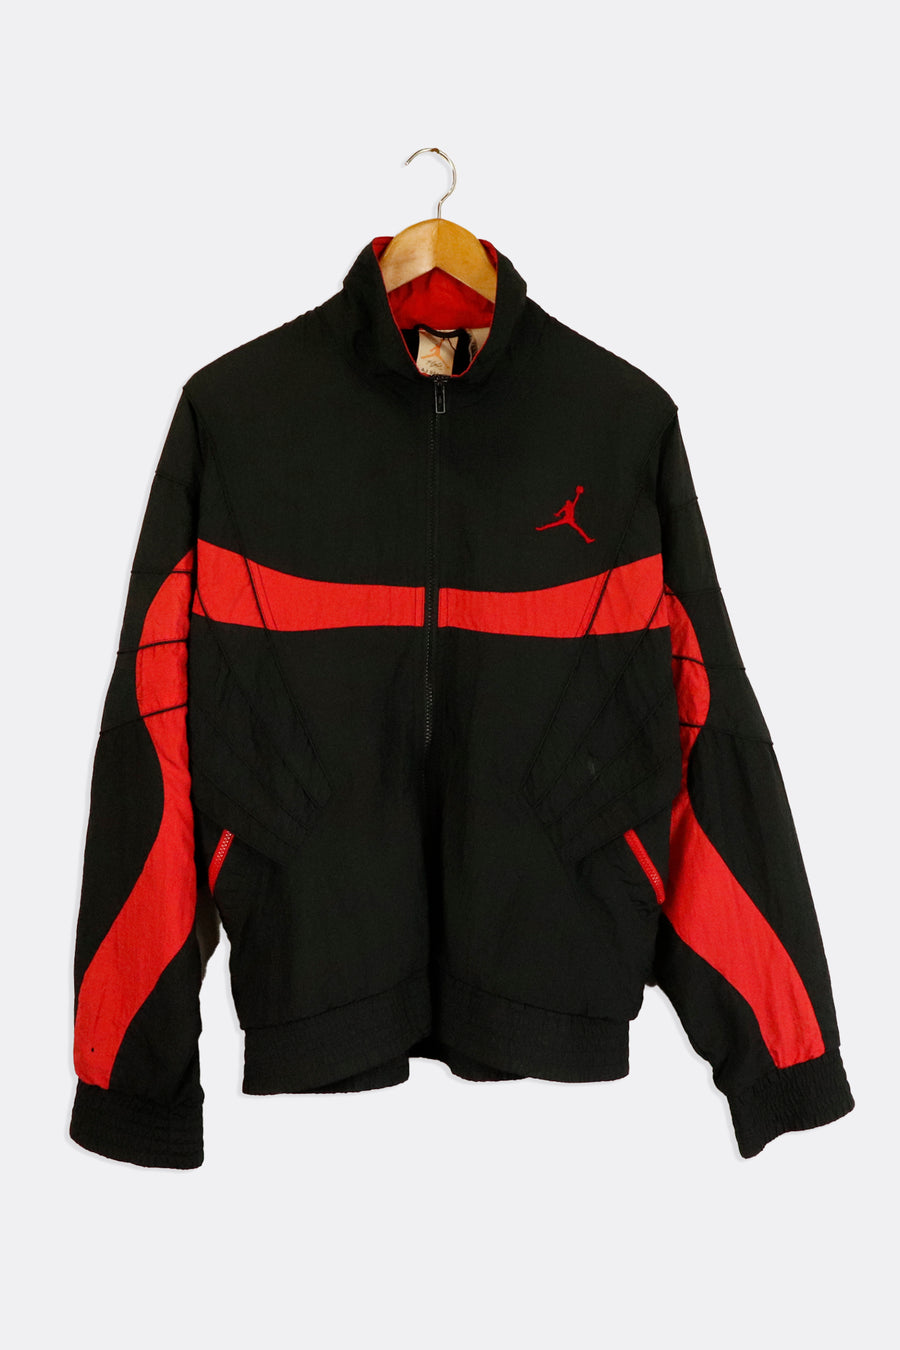 Vintage Nike Air Jordan Black And Red Full Zip Windbreak Crinkle Style Material Outerwear Sz XL